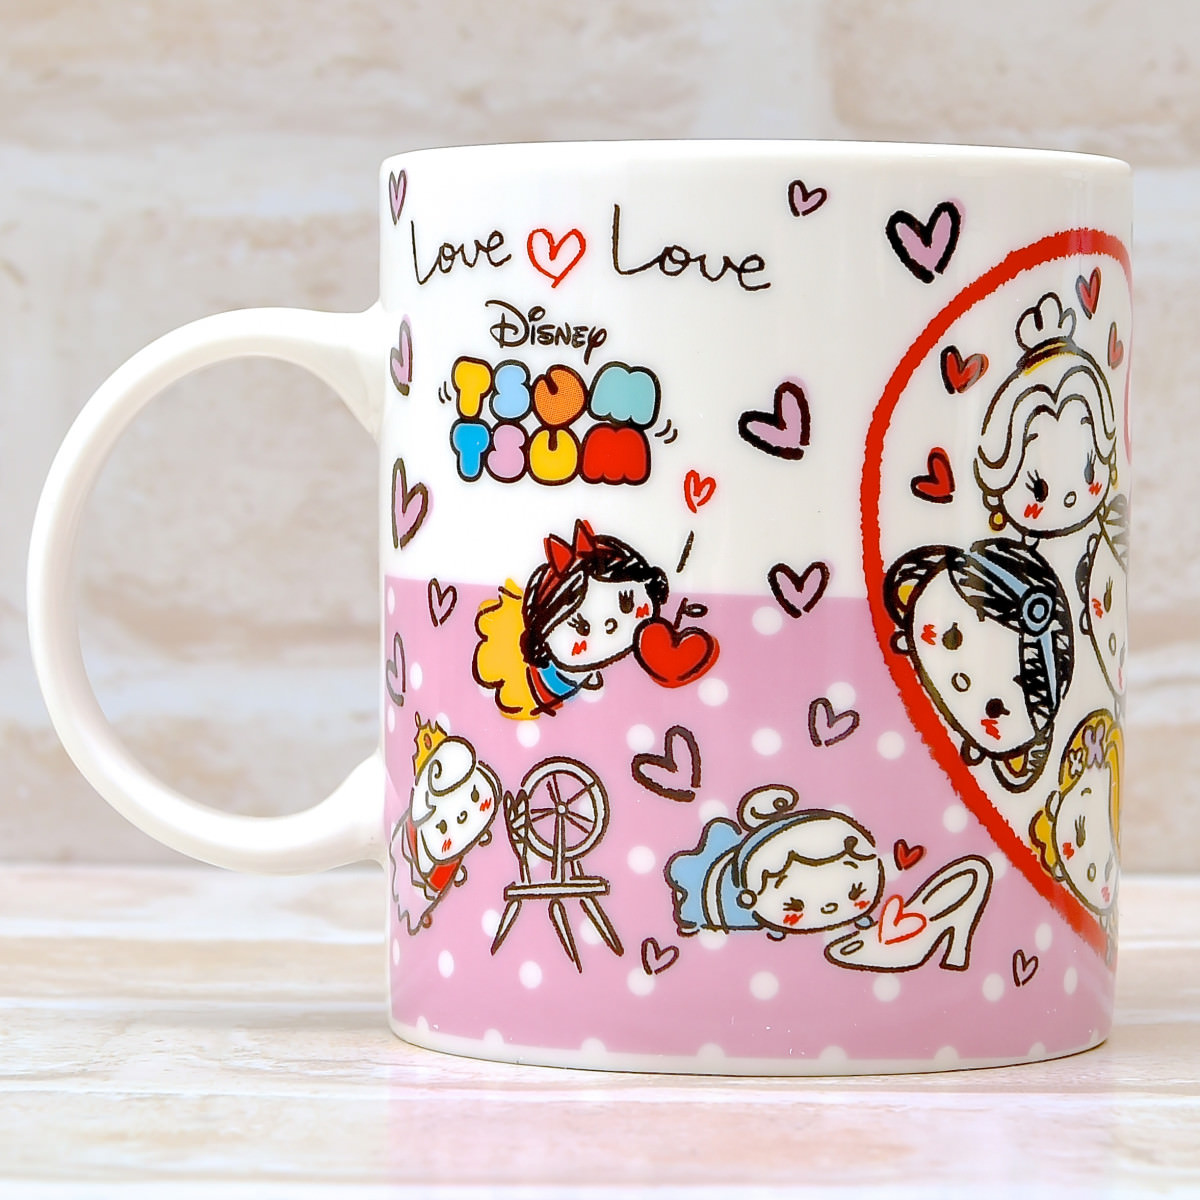 落書き風のイラストがかわいい セガ ディズニー ツムツム Love Loveシリーズ プレミアムペアマグカップ